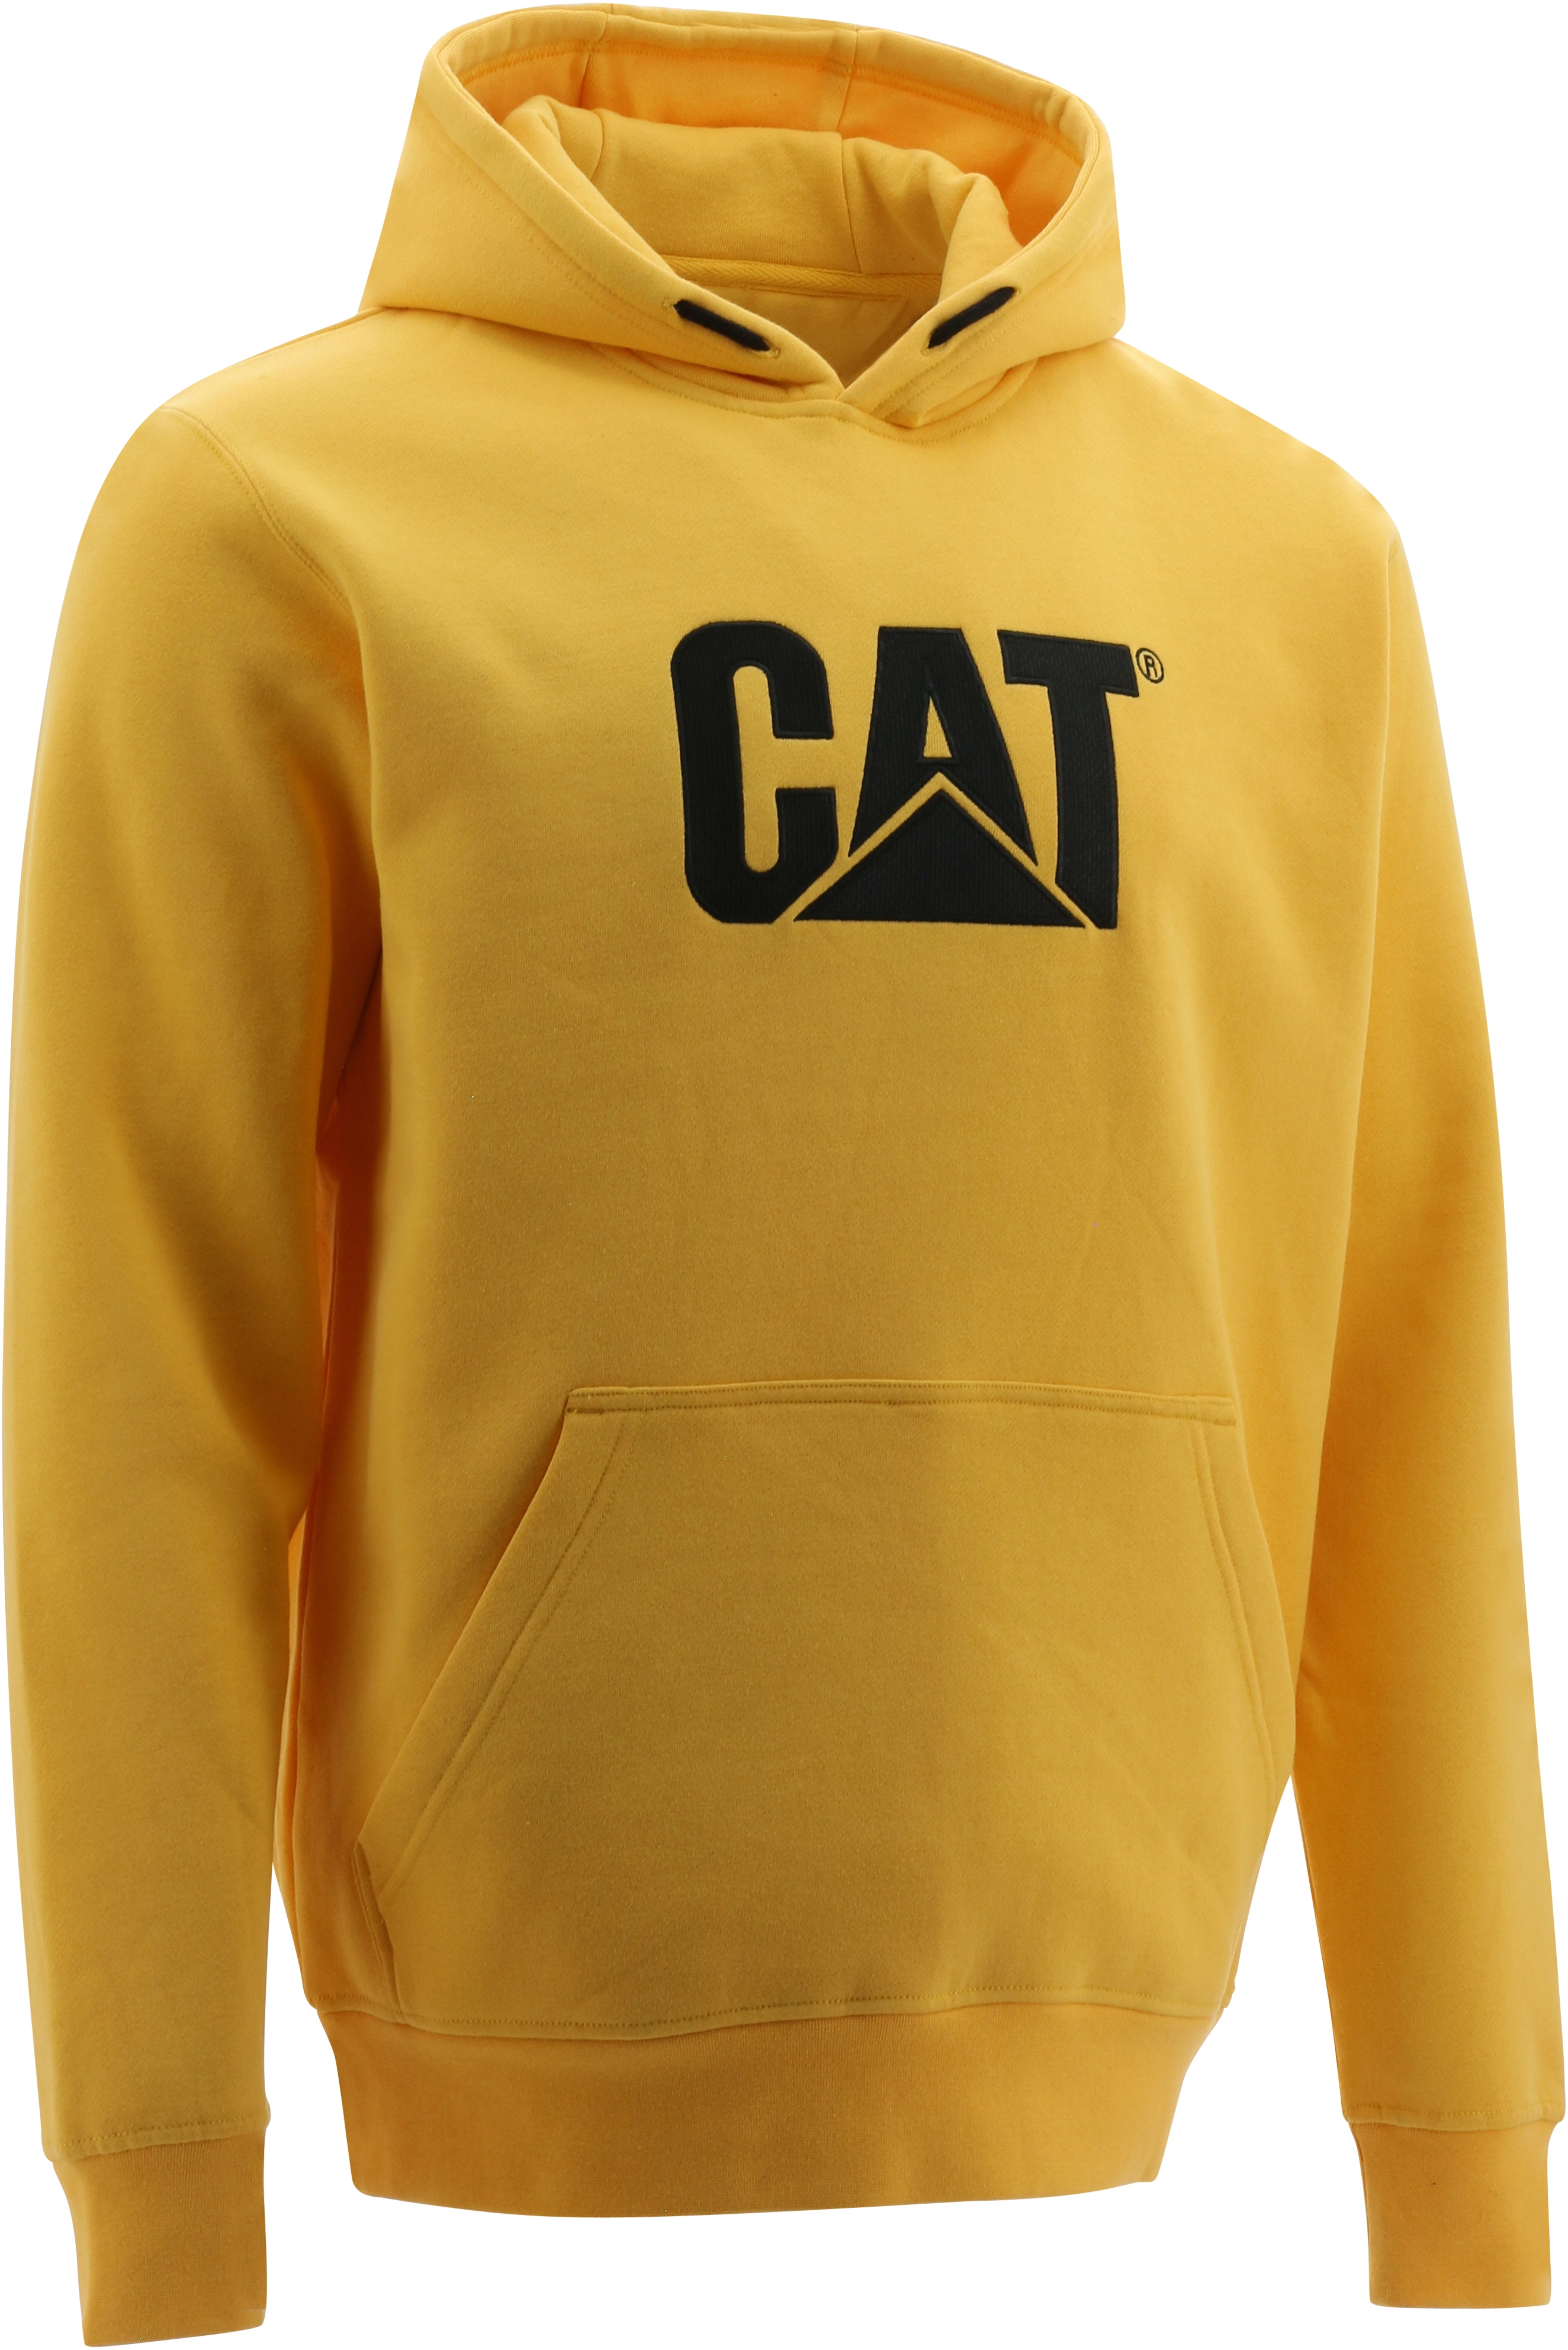 Cat Hoodie Gelb bei Trademark kaufen OBI M